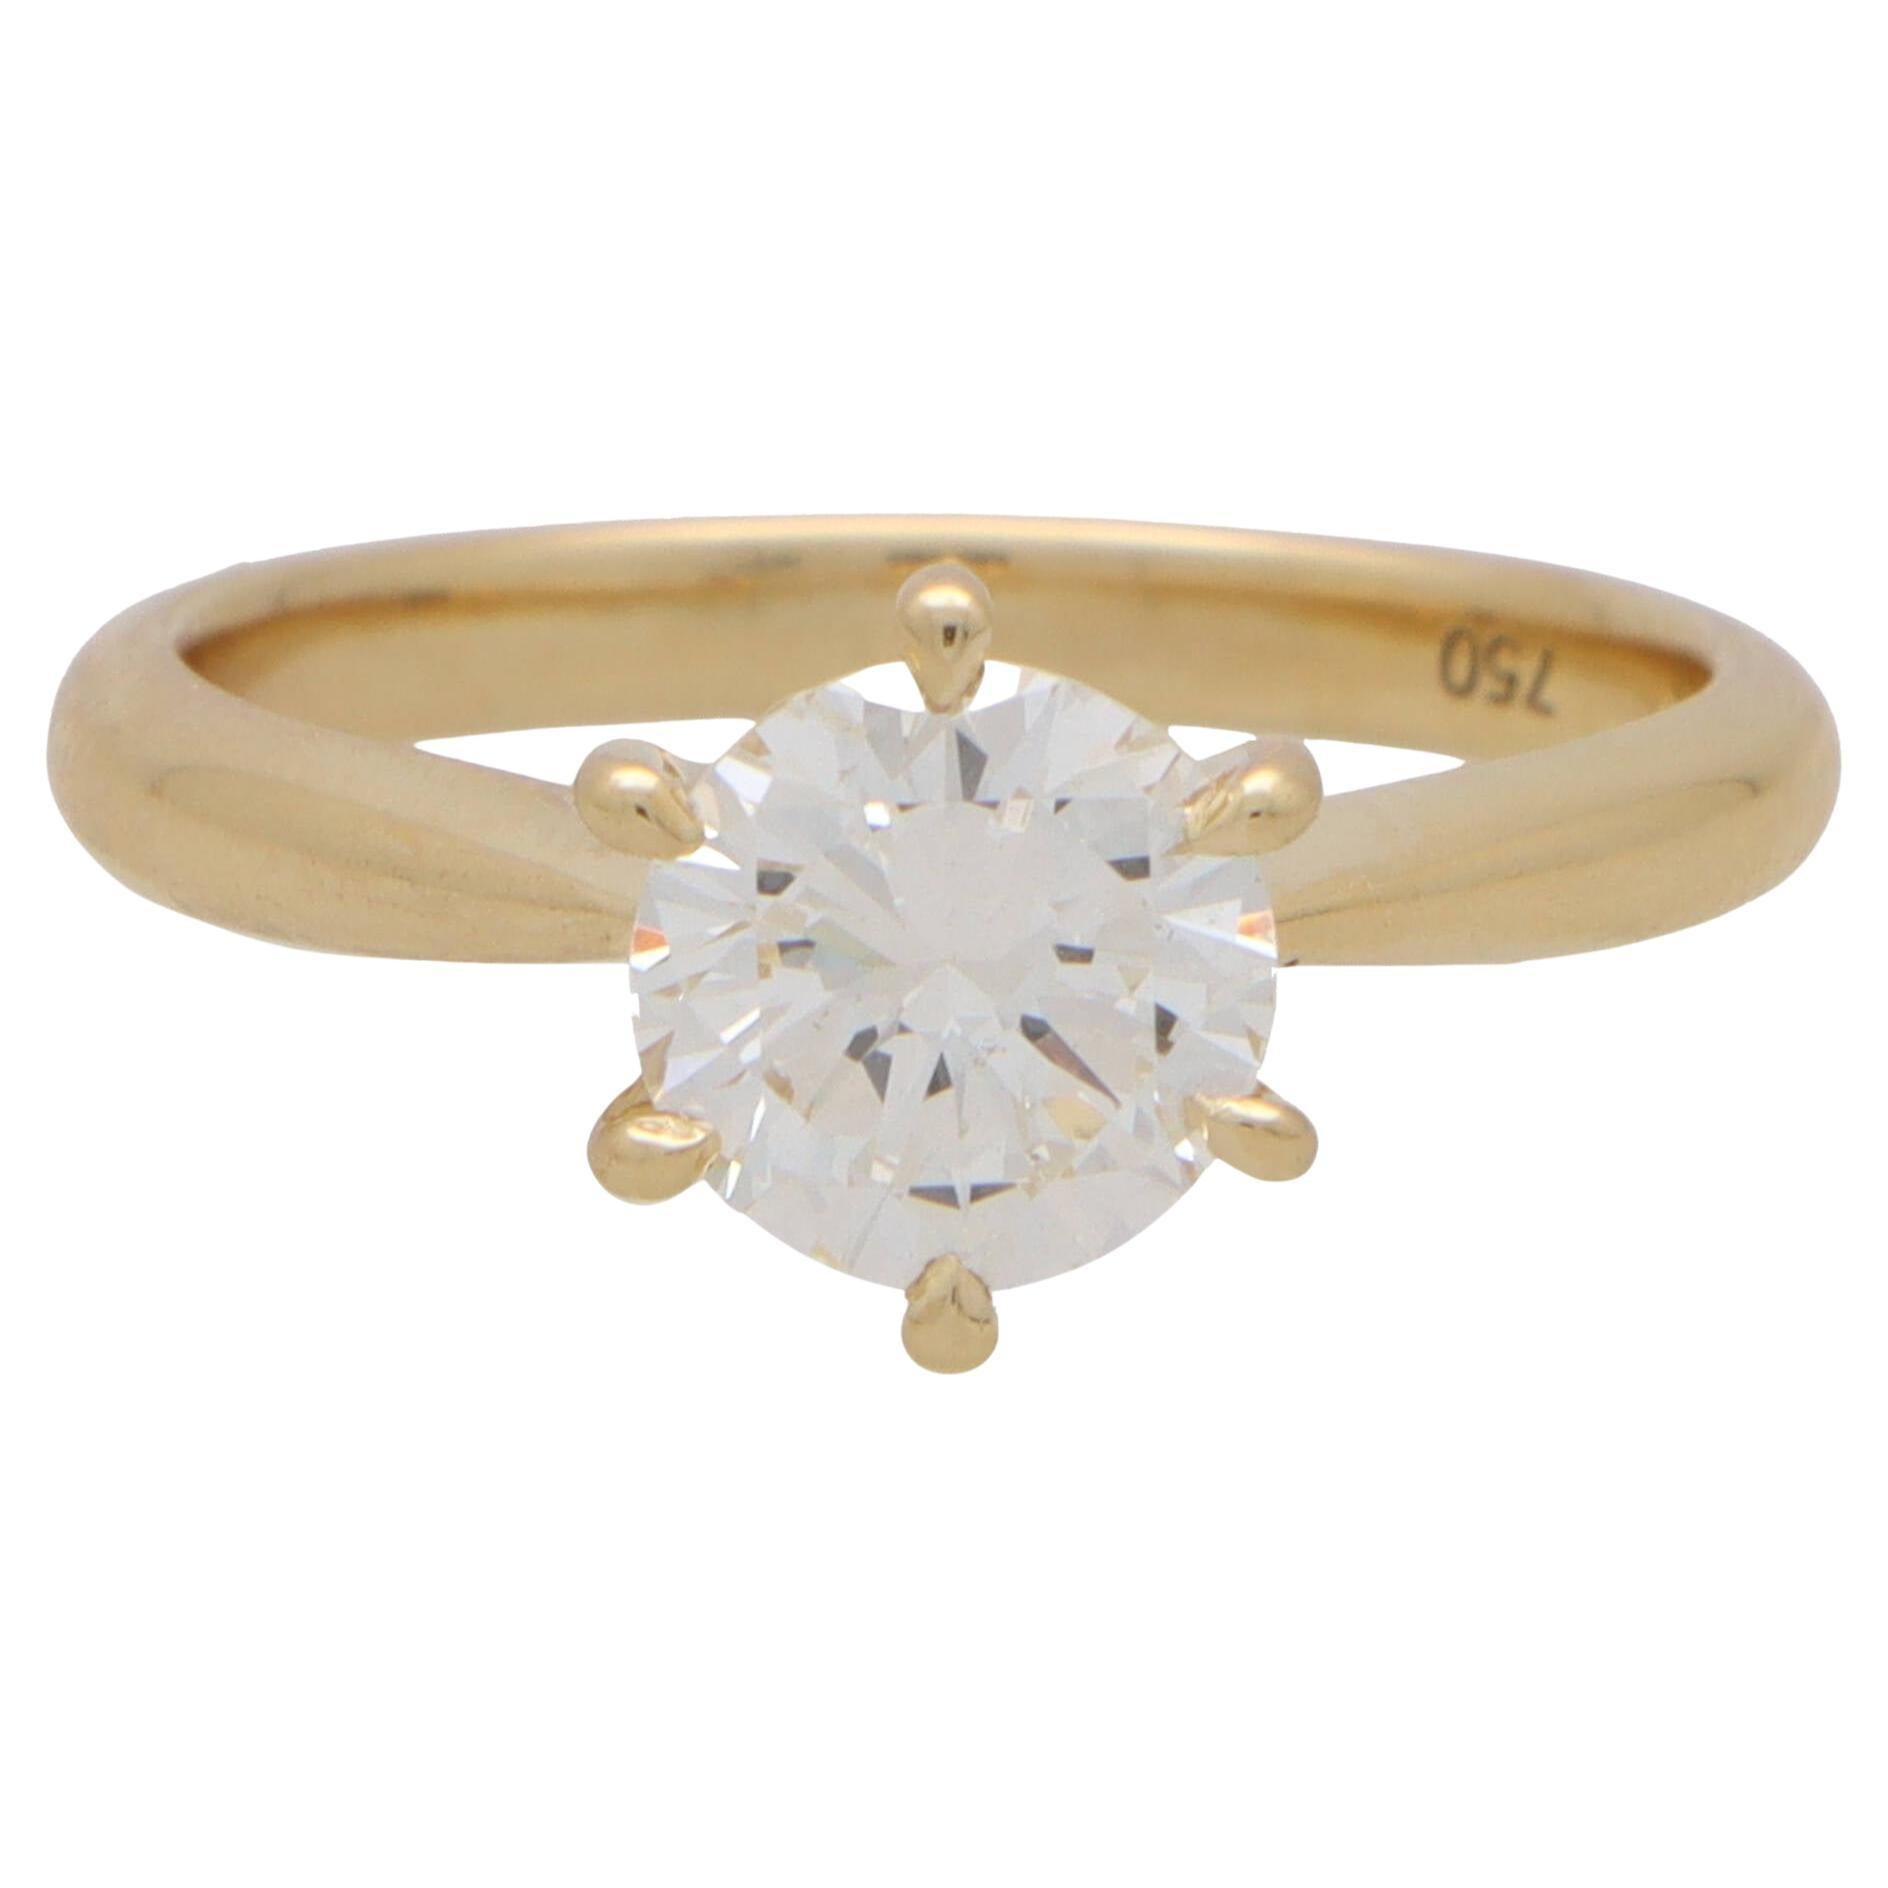 Zertifizierter runder Solitär-Ring aus 18 Karat Gelbgold mit Diamanten im Brillantschliff